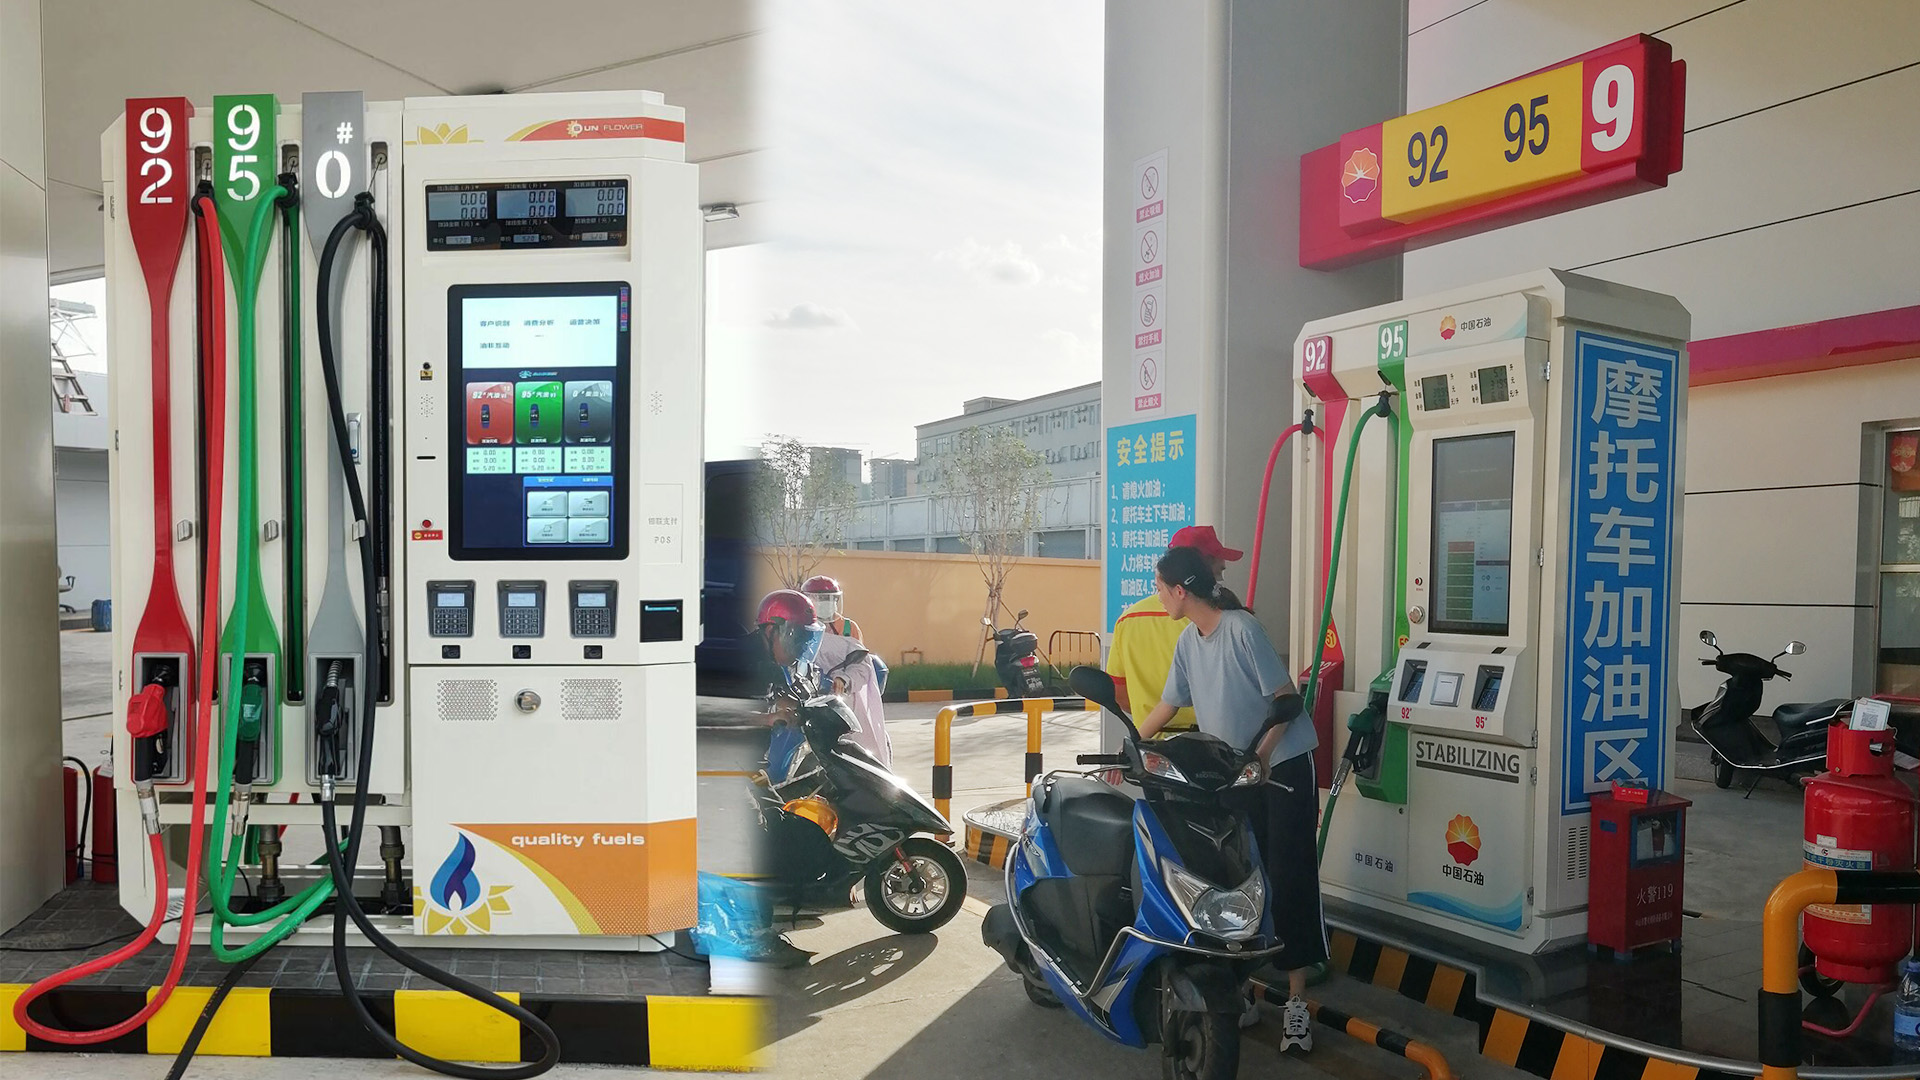 Masung printer provides fast service at gas station